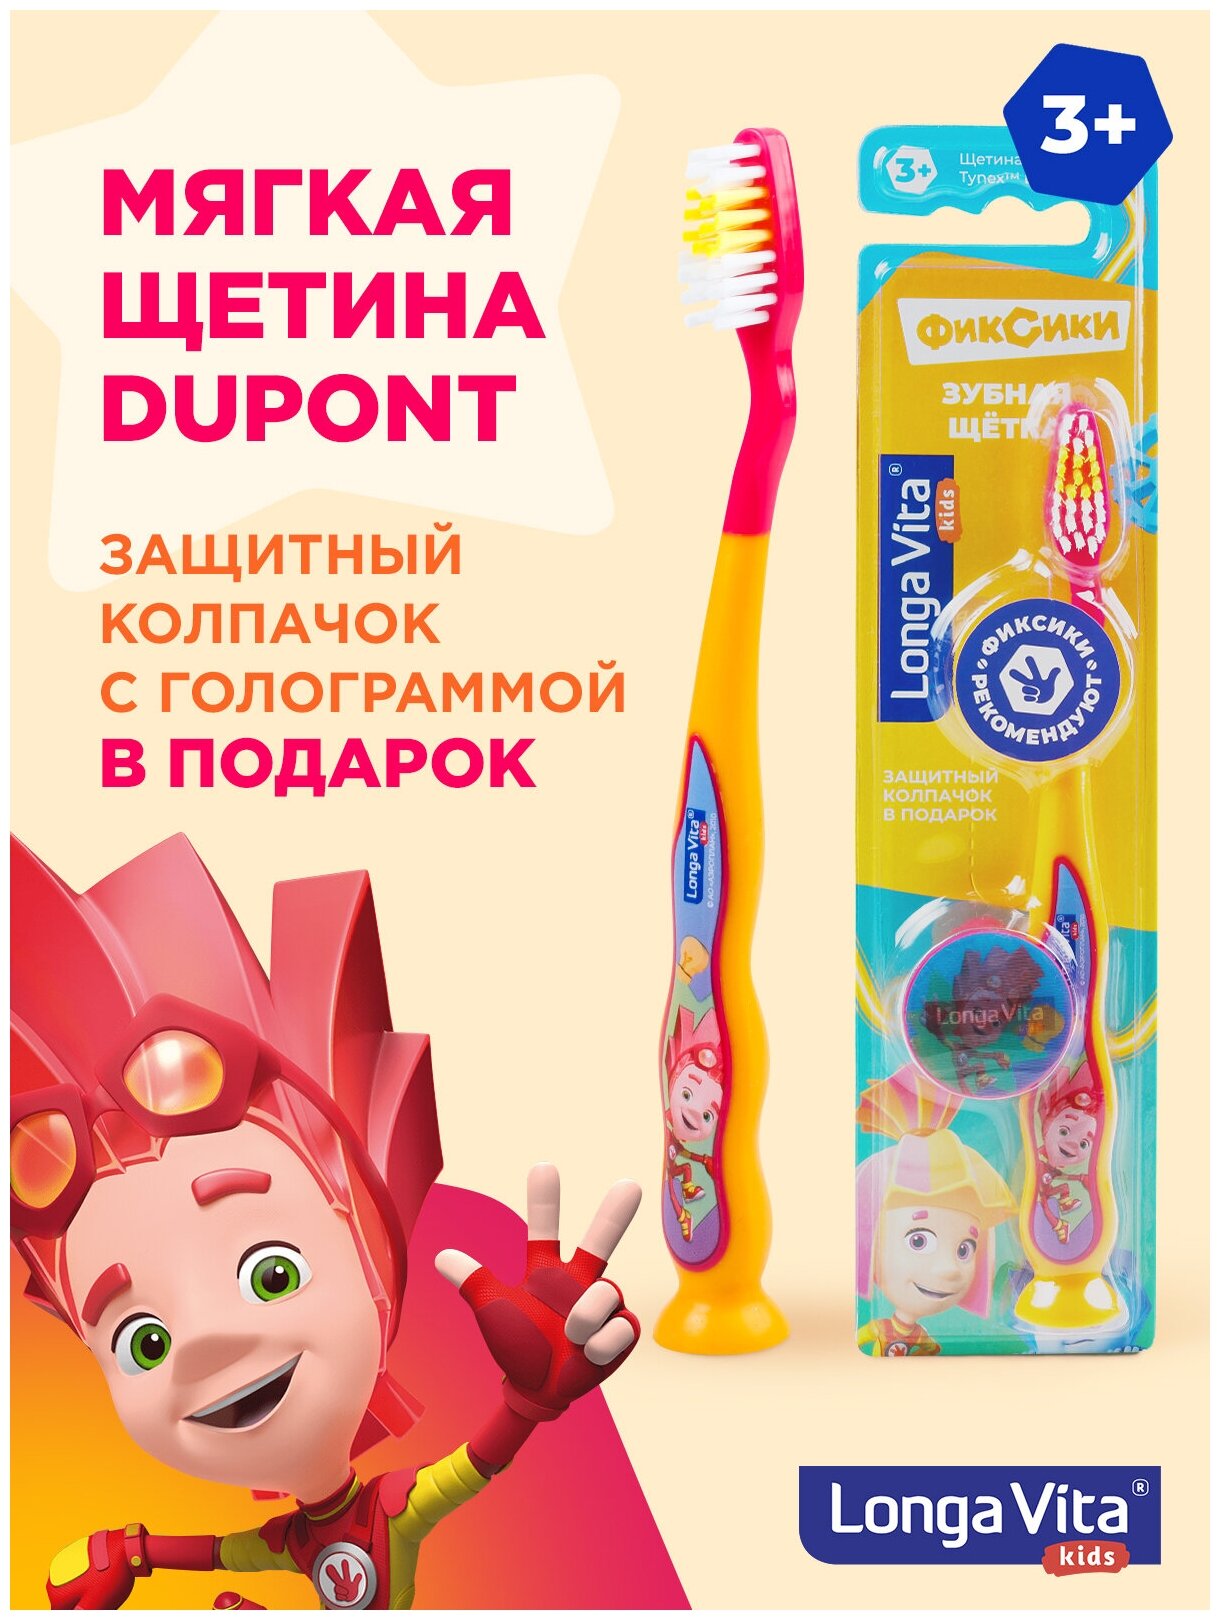 Детская зубная щётка Longa Vita арт. S-205 фиксики (защитный колпачок, присоска), от 3-х лет , оранжевая